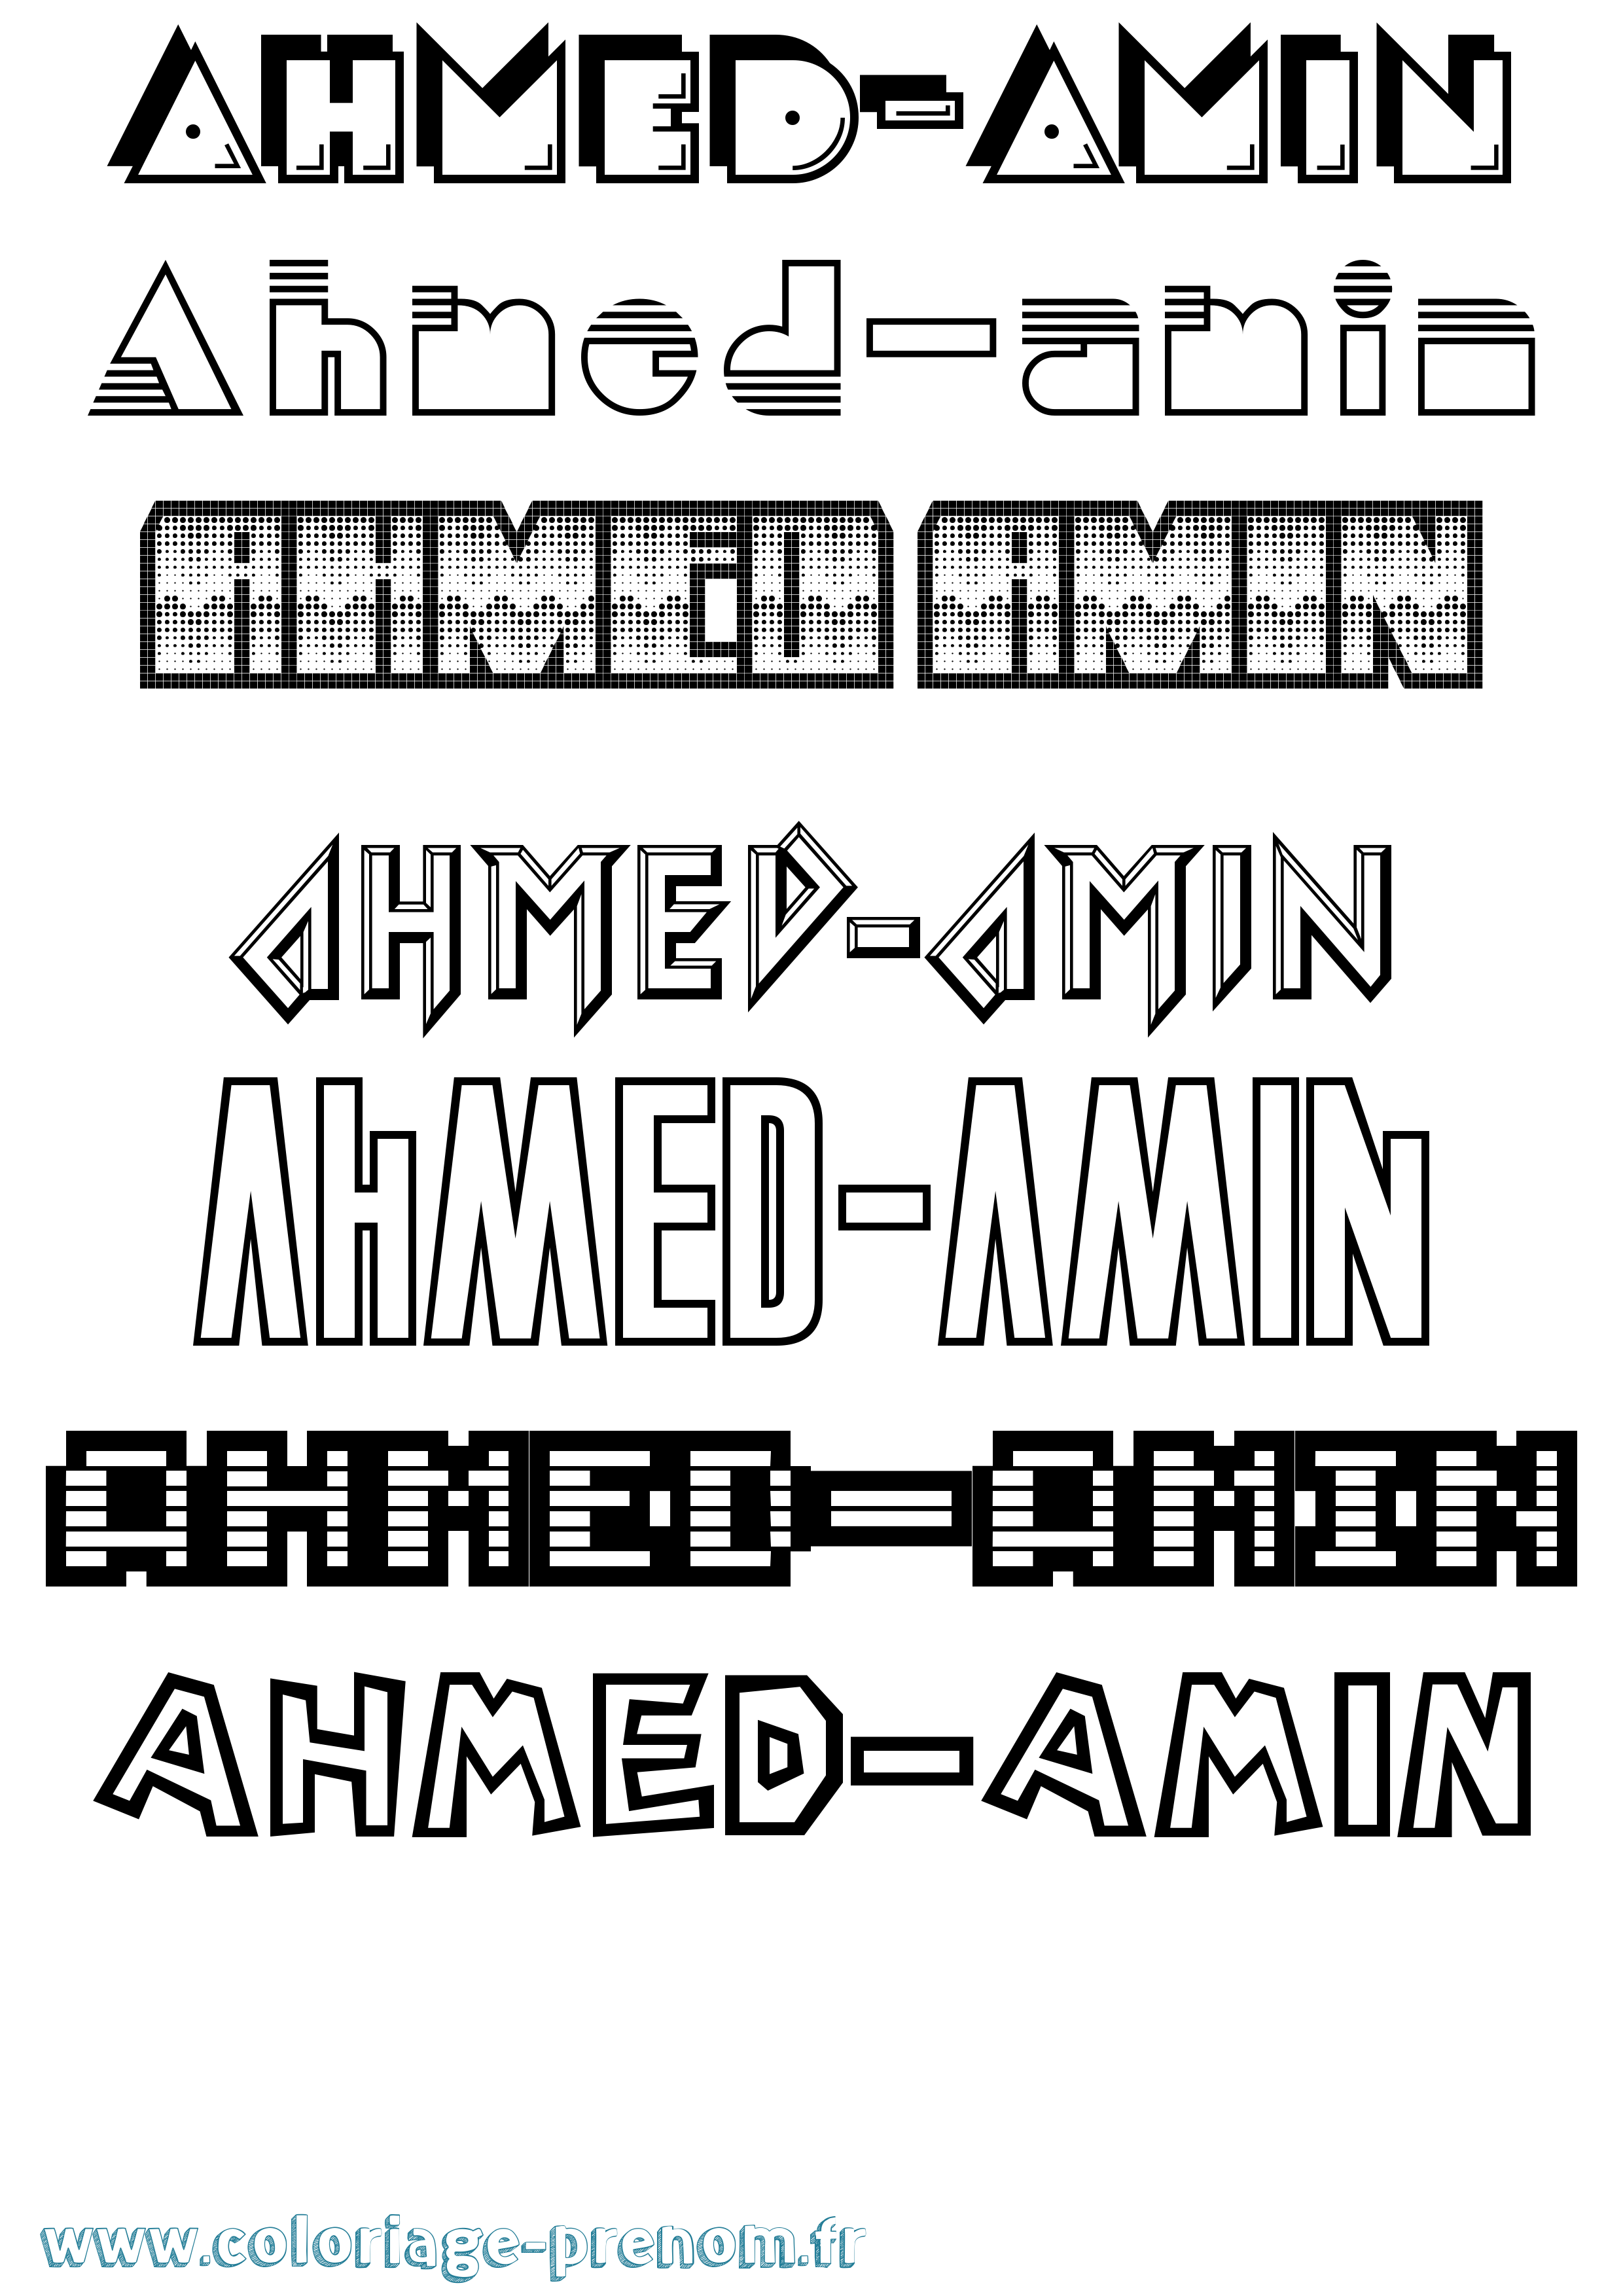 Coloriage prénom Ahmed-Amin Jeux Vidéos